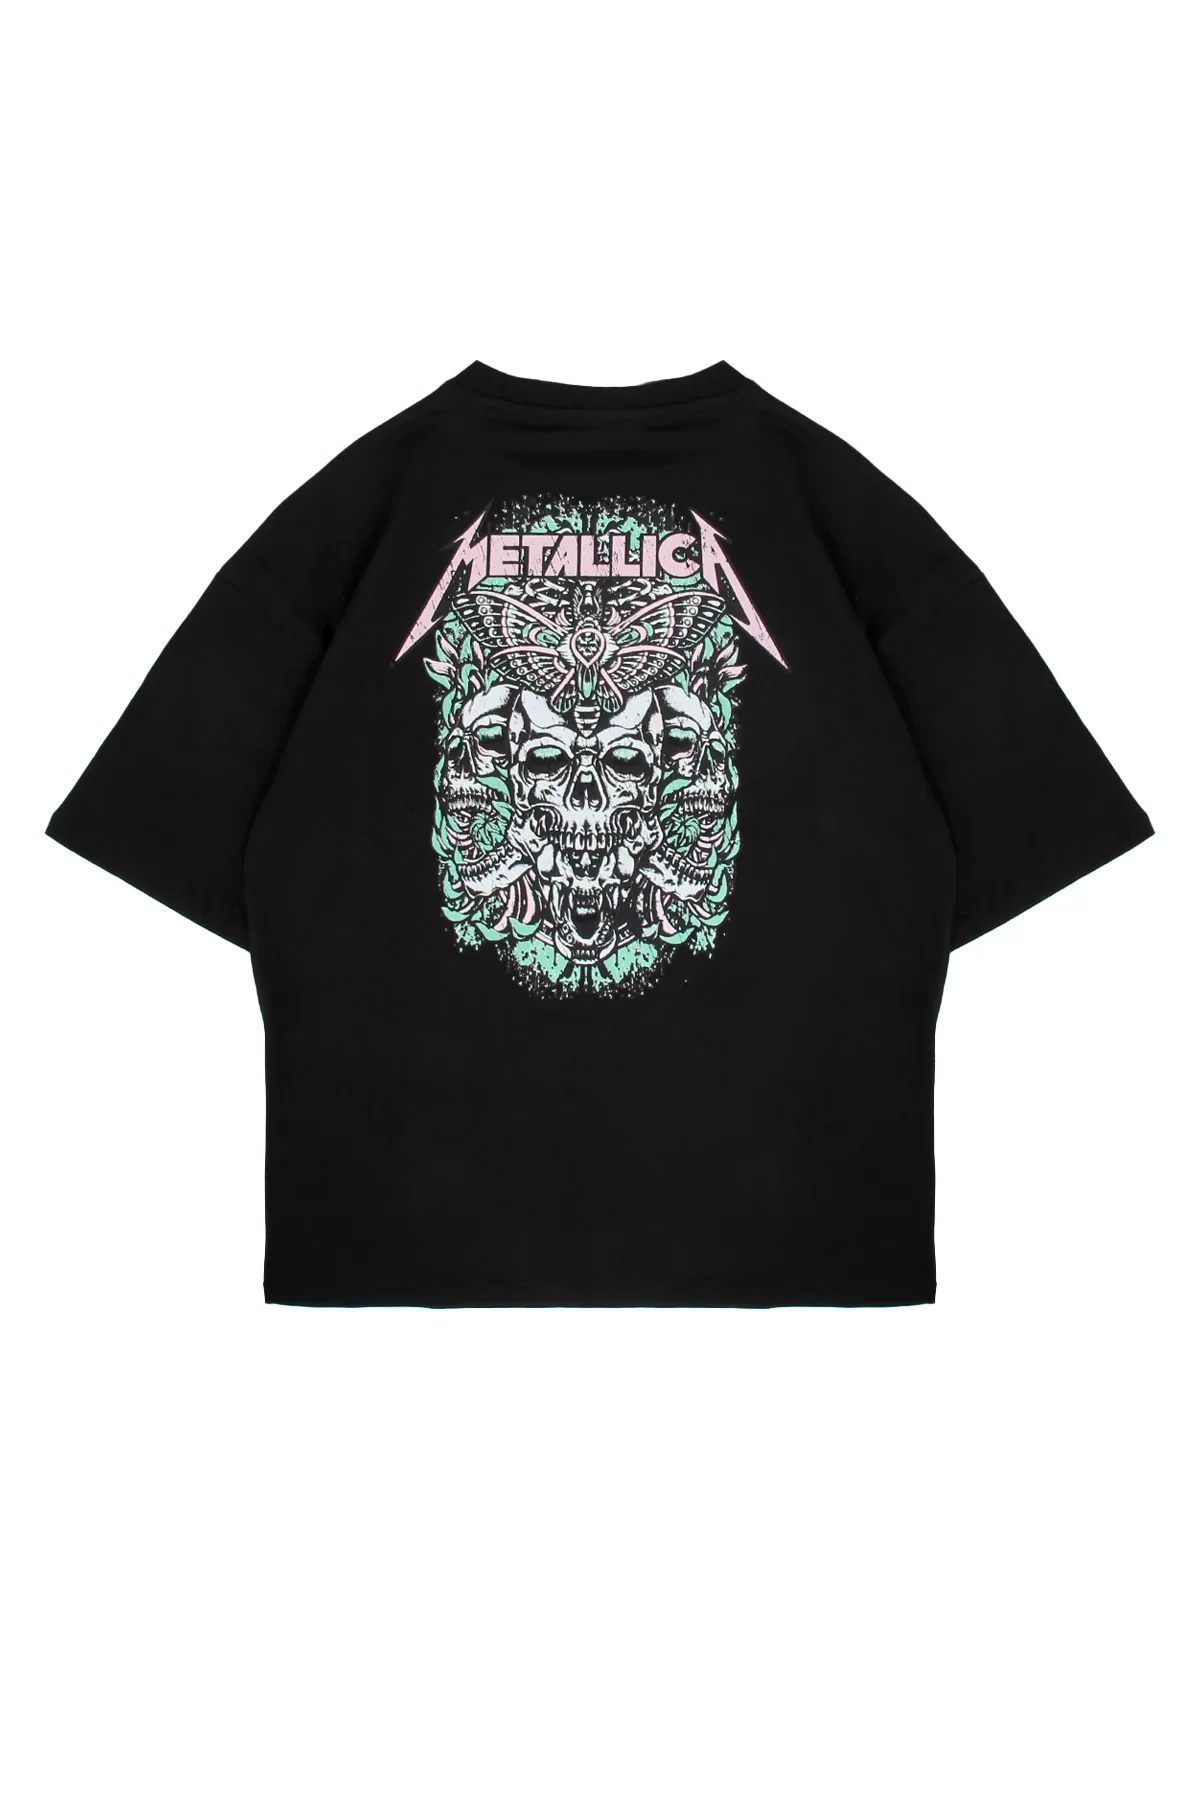 Metallica Dead Fly Baskılı Siyah Oversize Unisex Tshirt